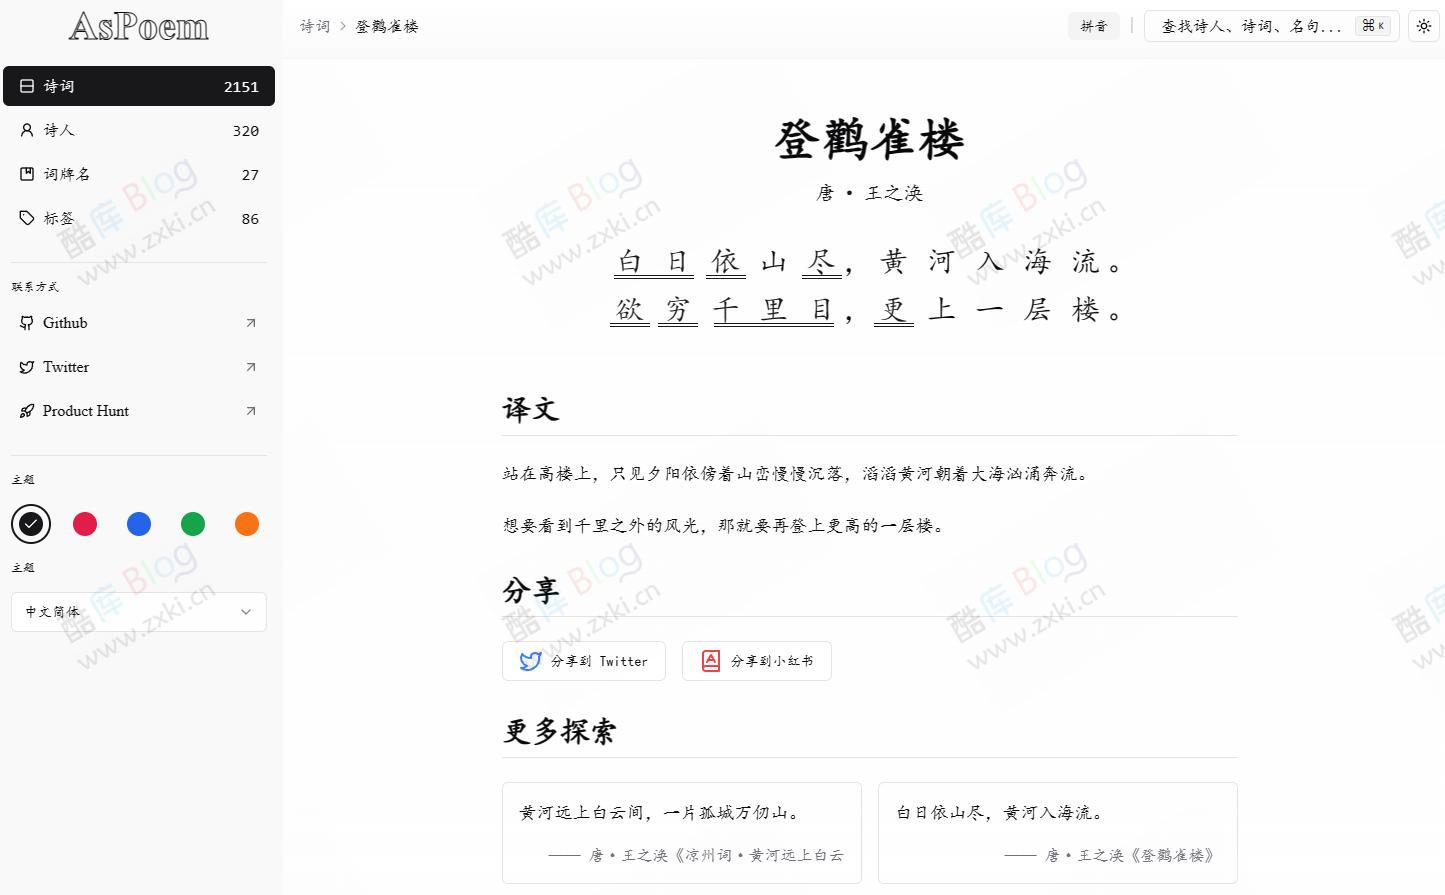 AsPoem-开源现代化中国诗词学习网站 第2张插图